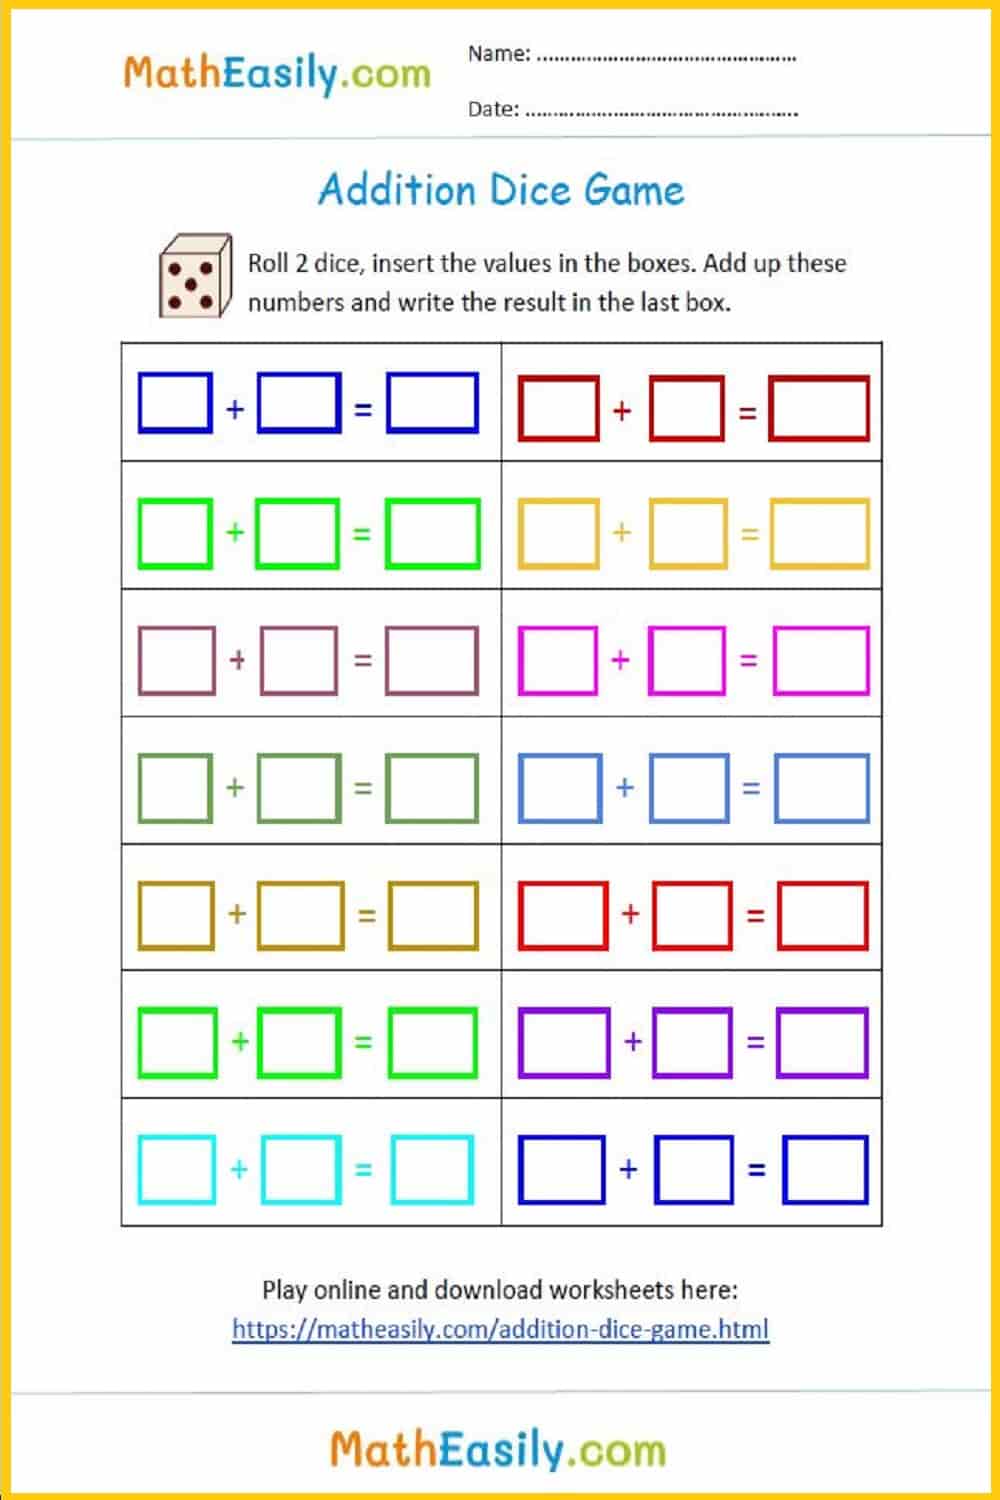 hands-on math activities kindergarten. free printable math games for kindergarten in PDF. Kindergarten math exercises